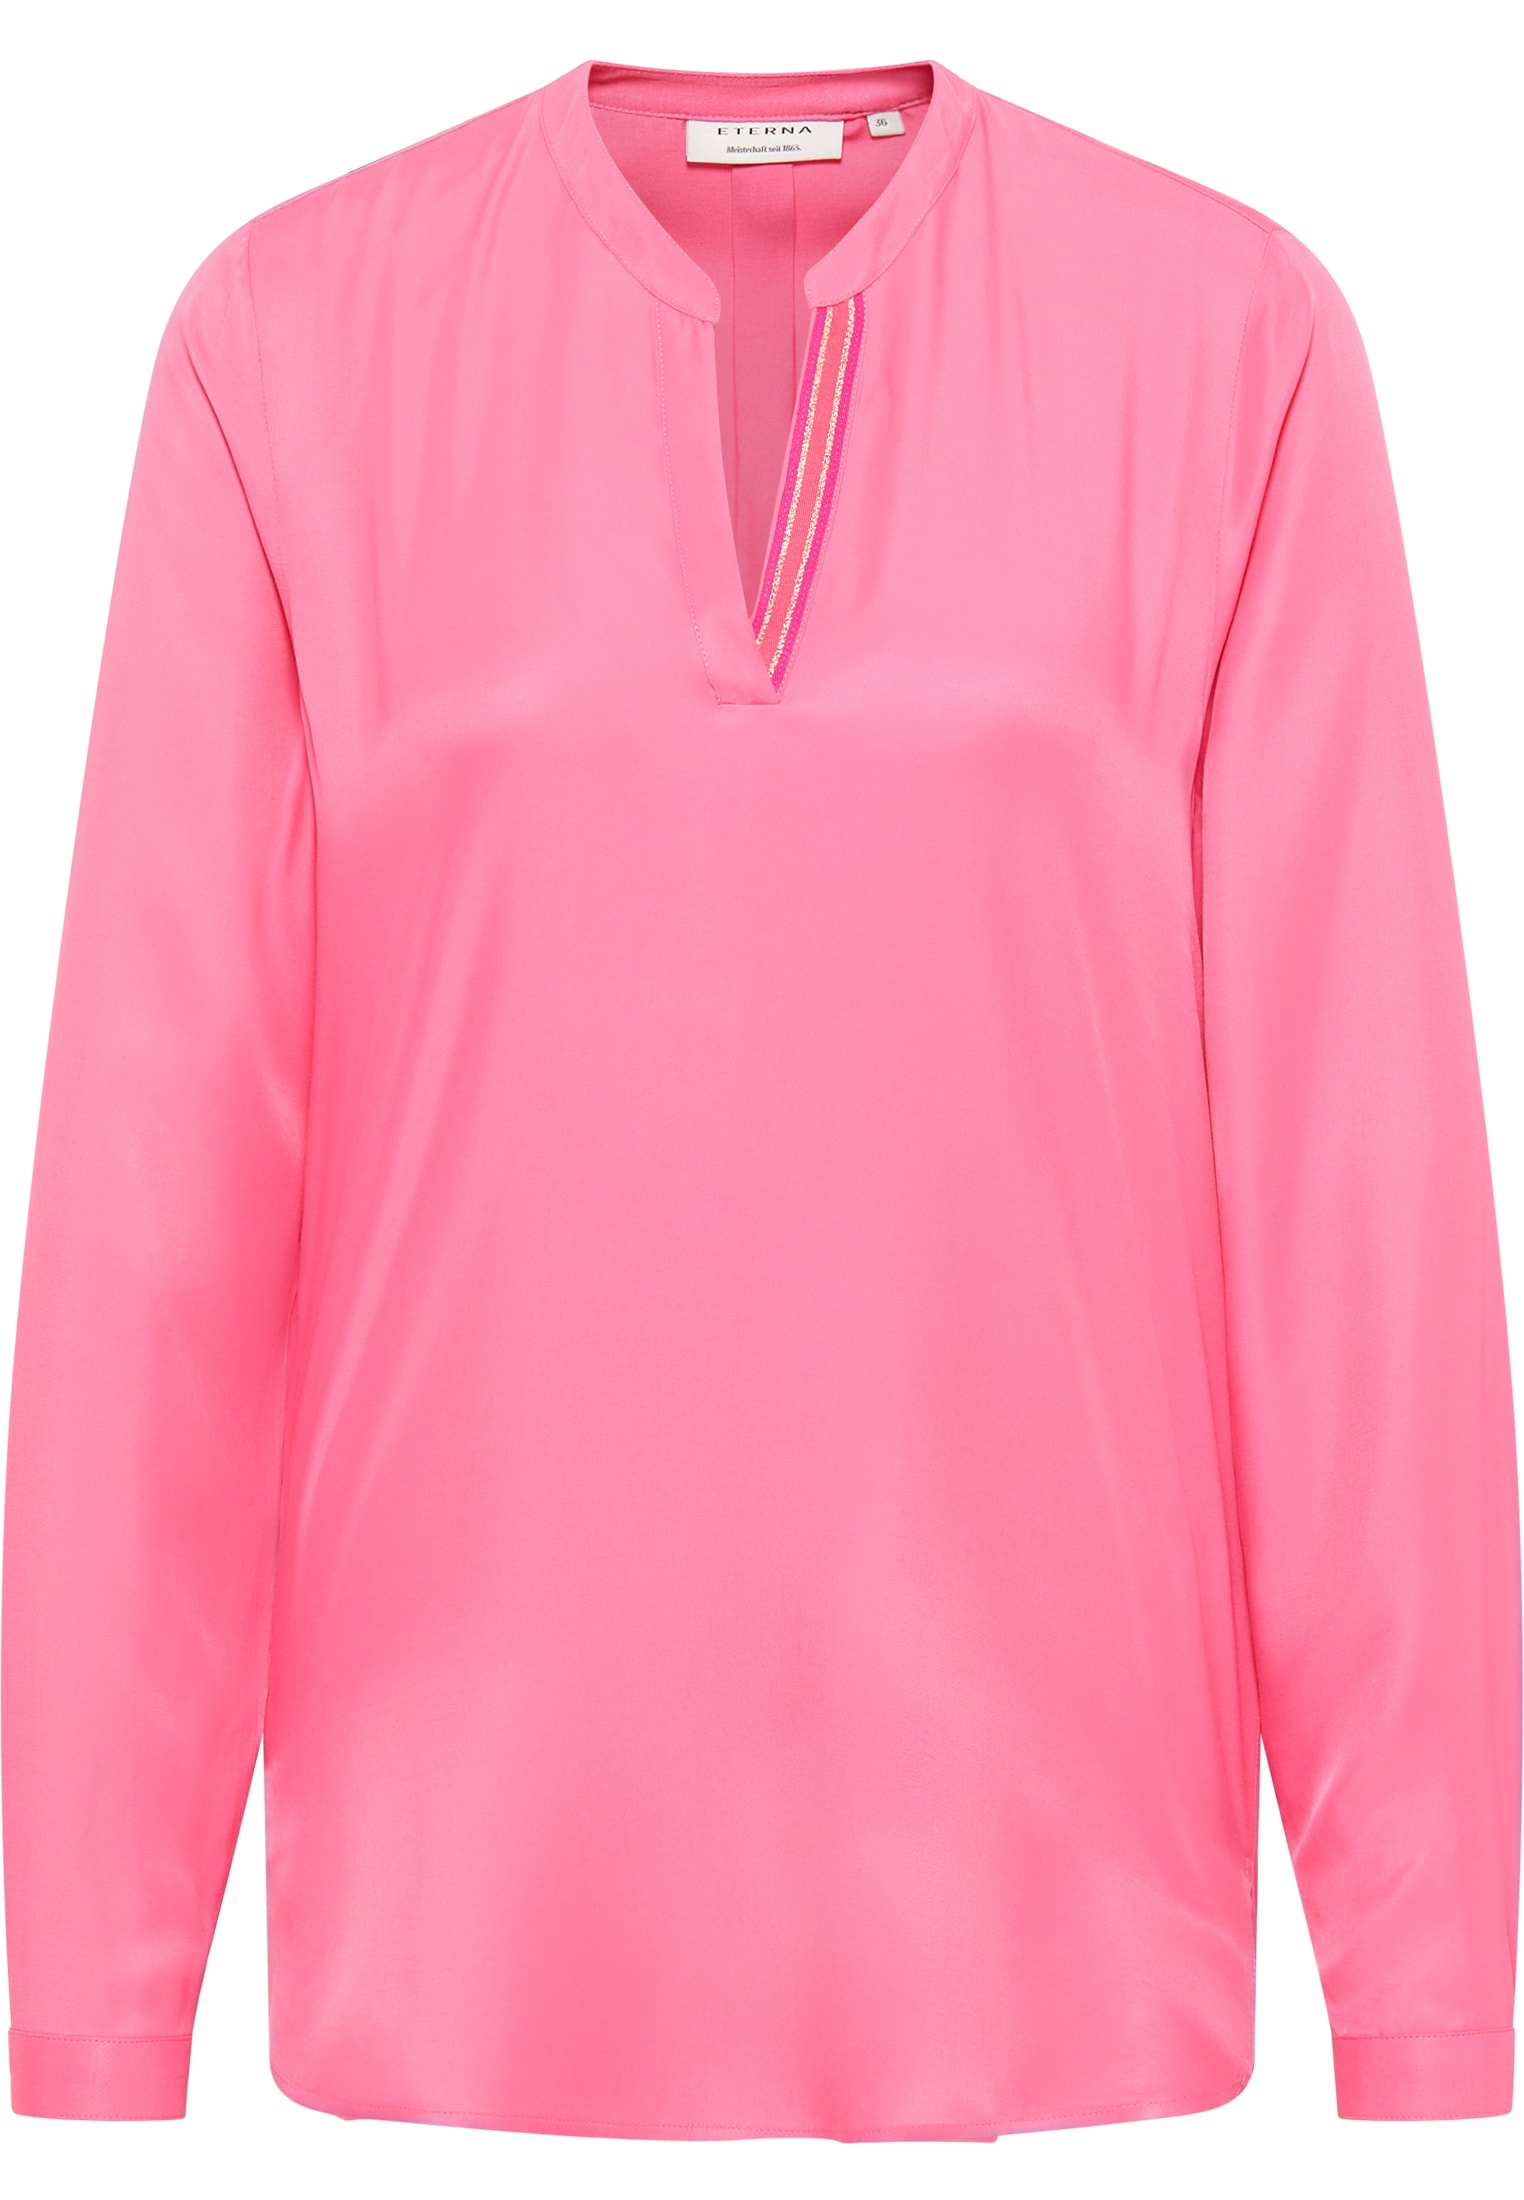 Viscose Shirt 2BL04272-15-21-36-1/1 in Langarm unifarben | | pink pink | Bluse 36 